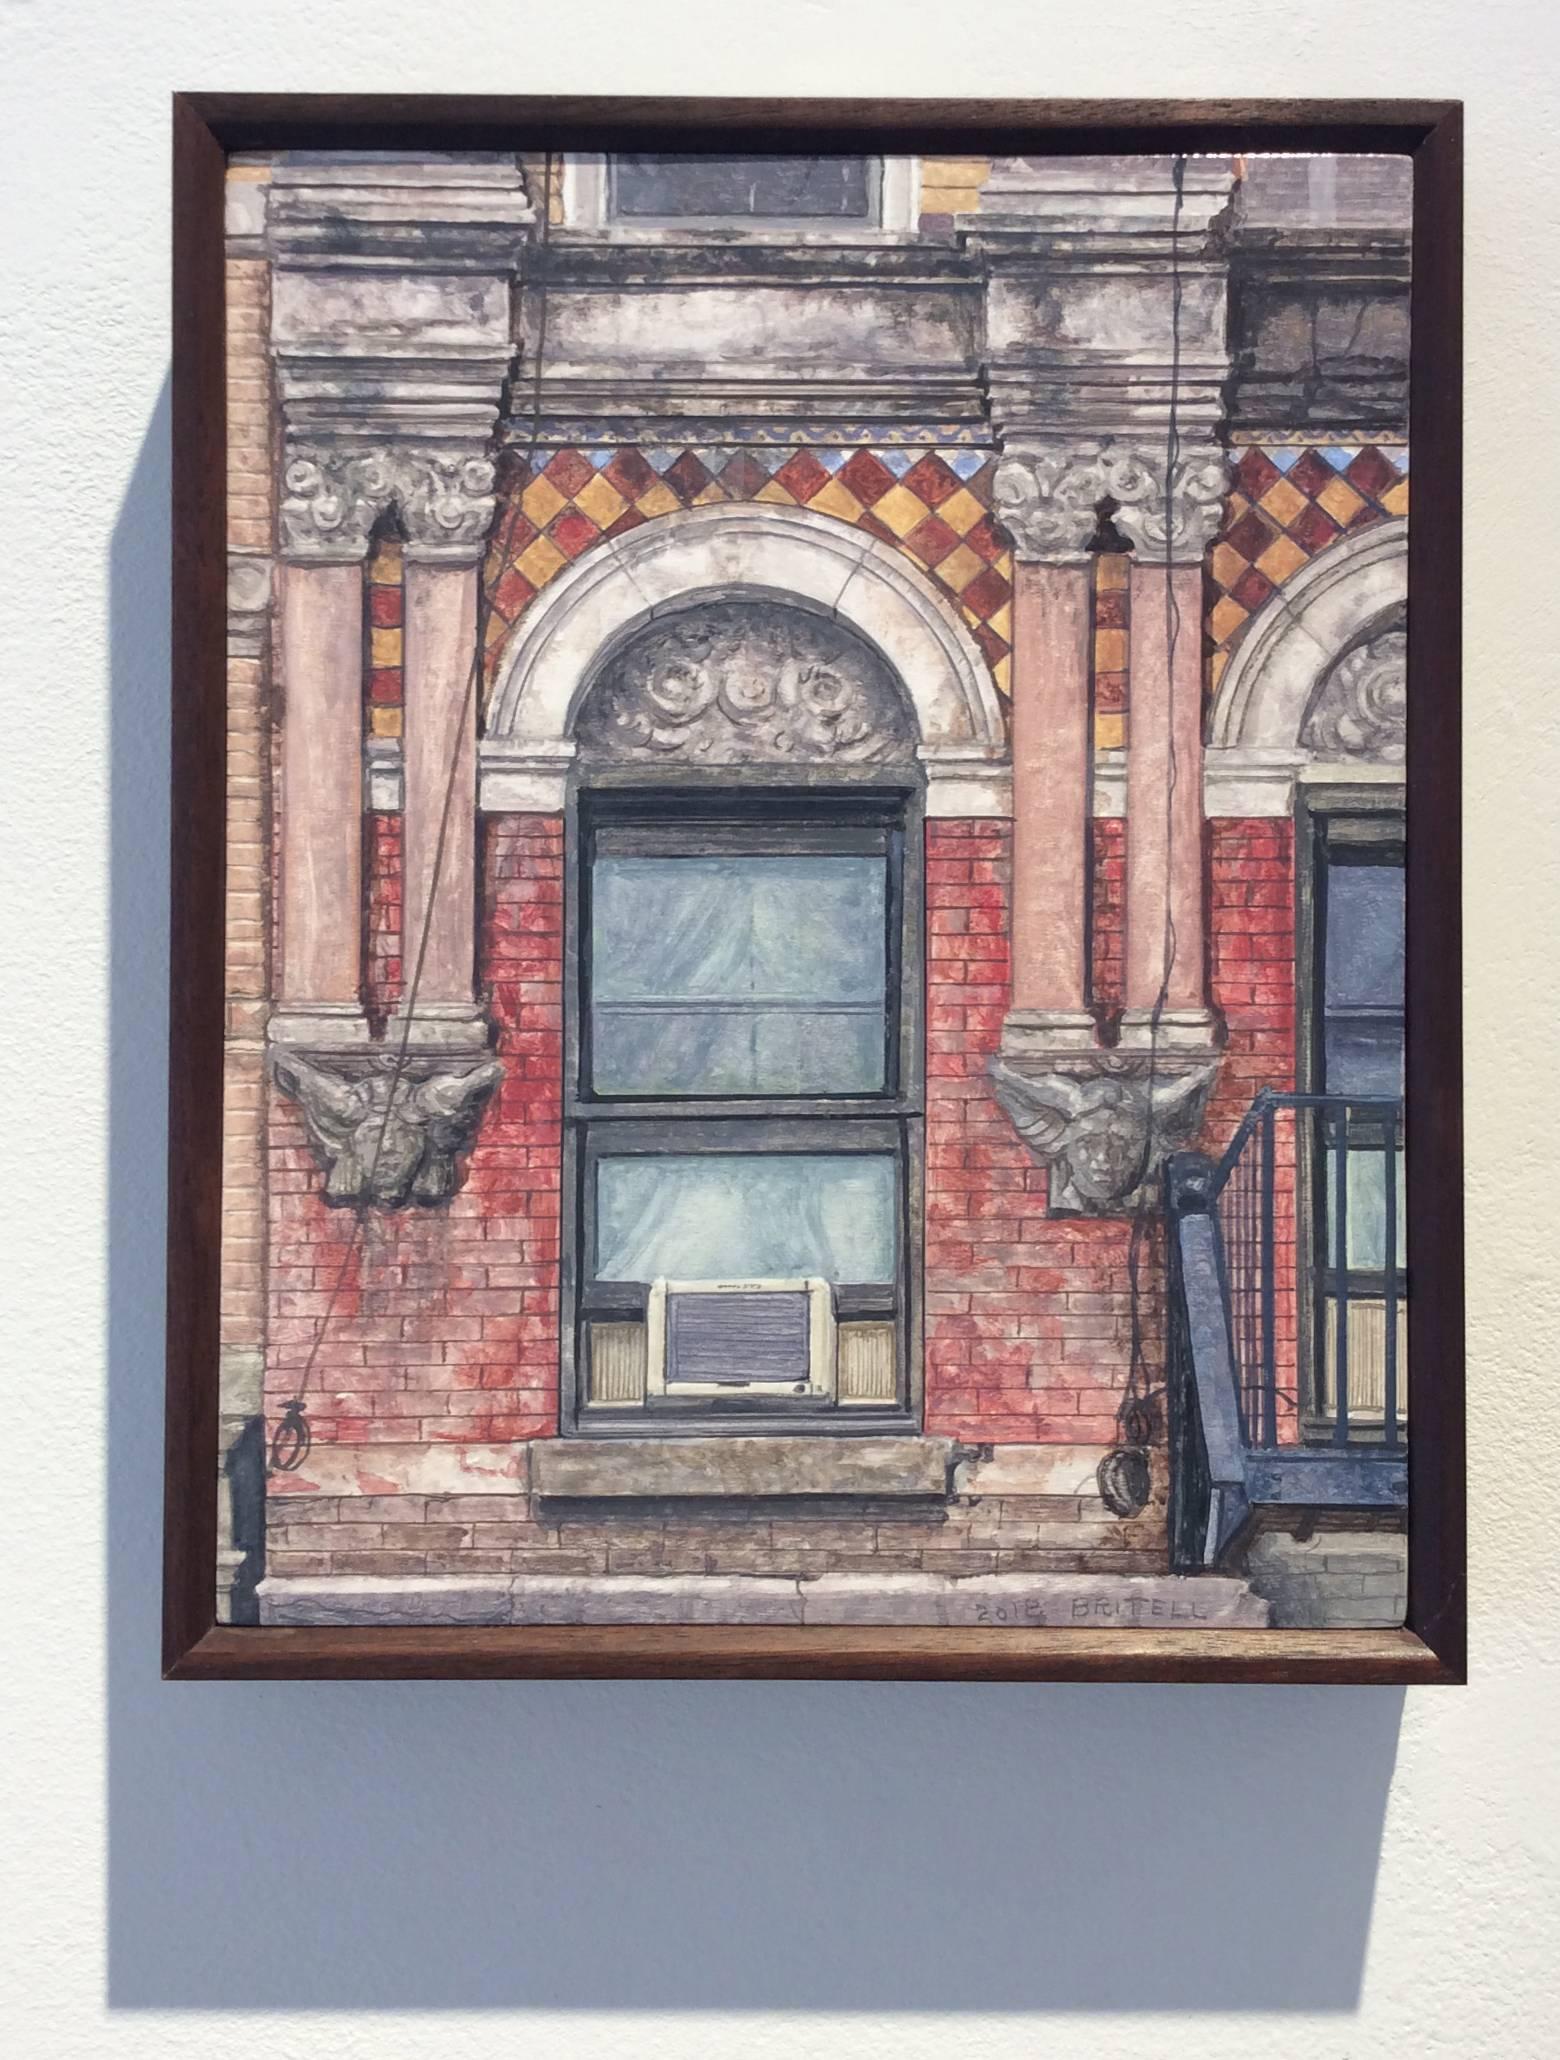 Madison Street (fotorealistisches Stillleben eines roten Backsteingebäudes in New York City) – Painting von Richard Britell